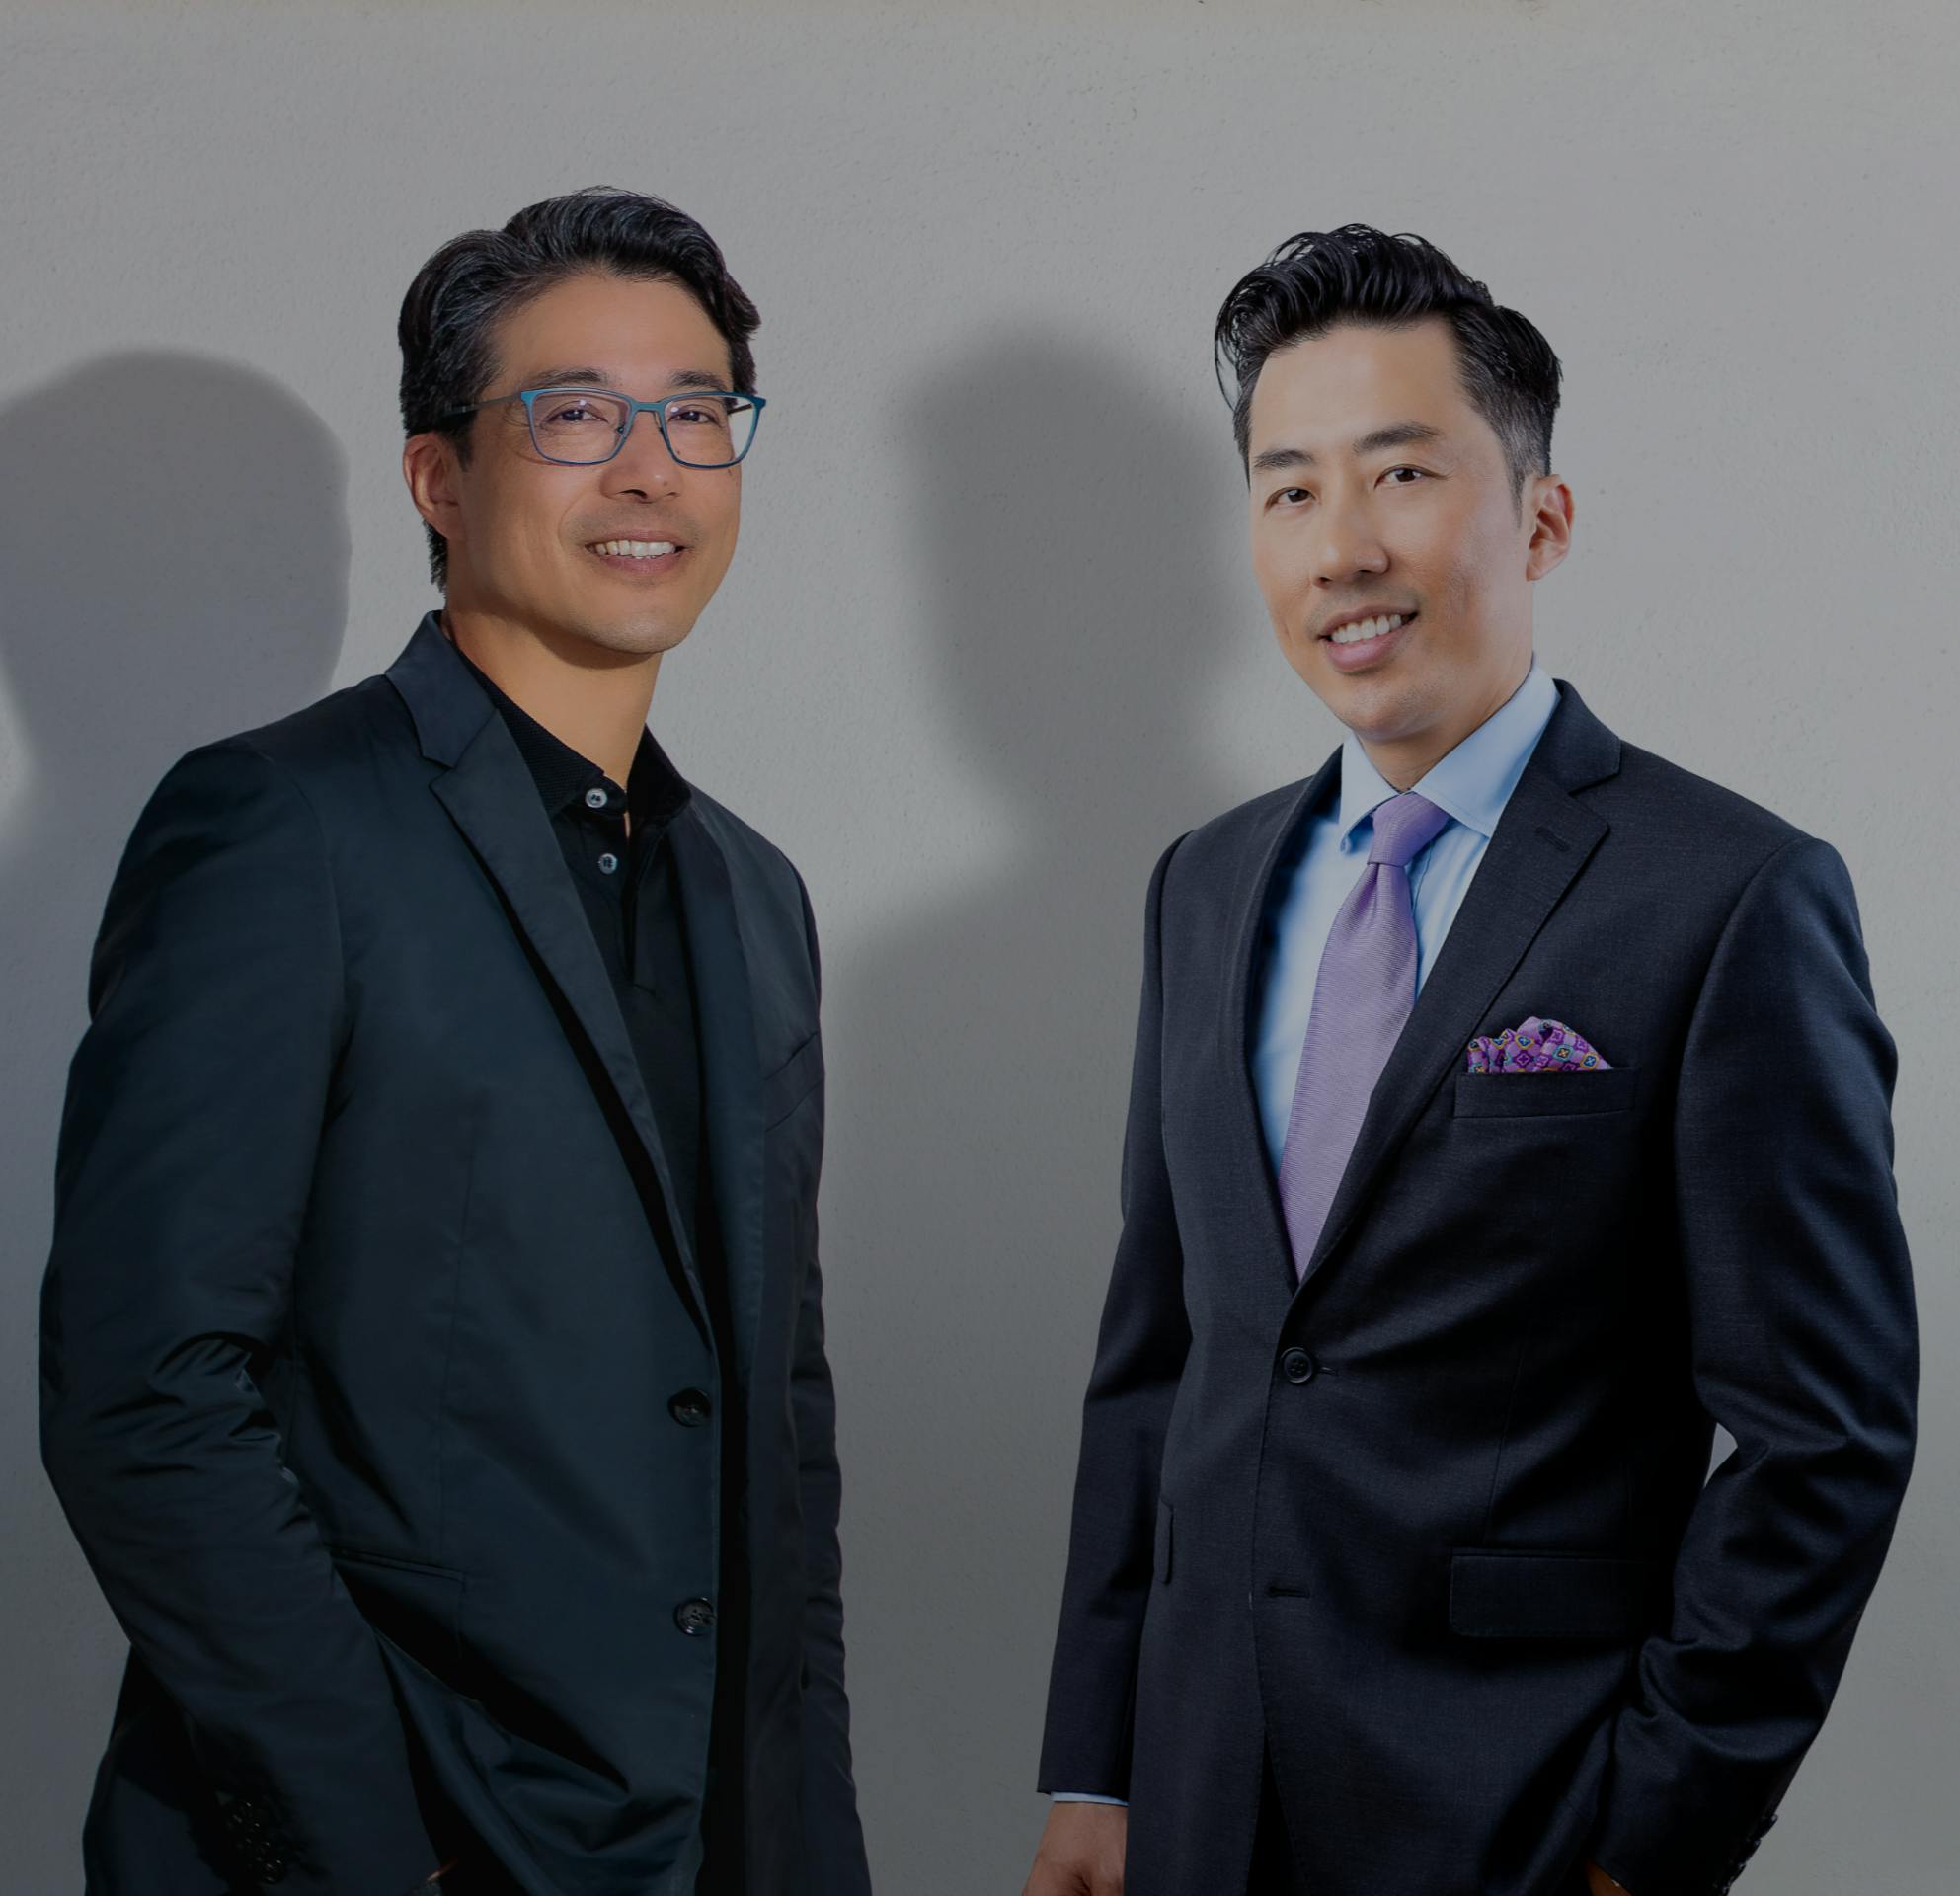 Dr. Jerome Liu and Dr. Tom Liu